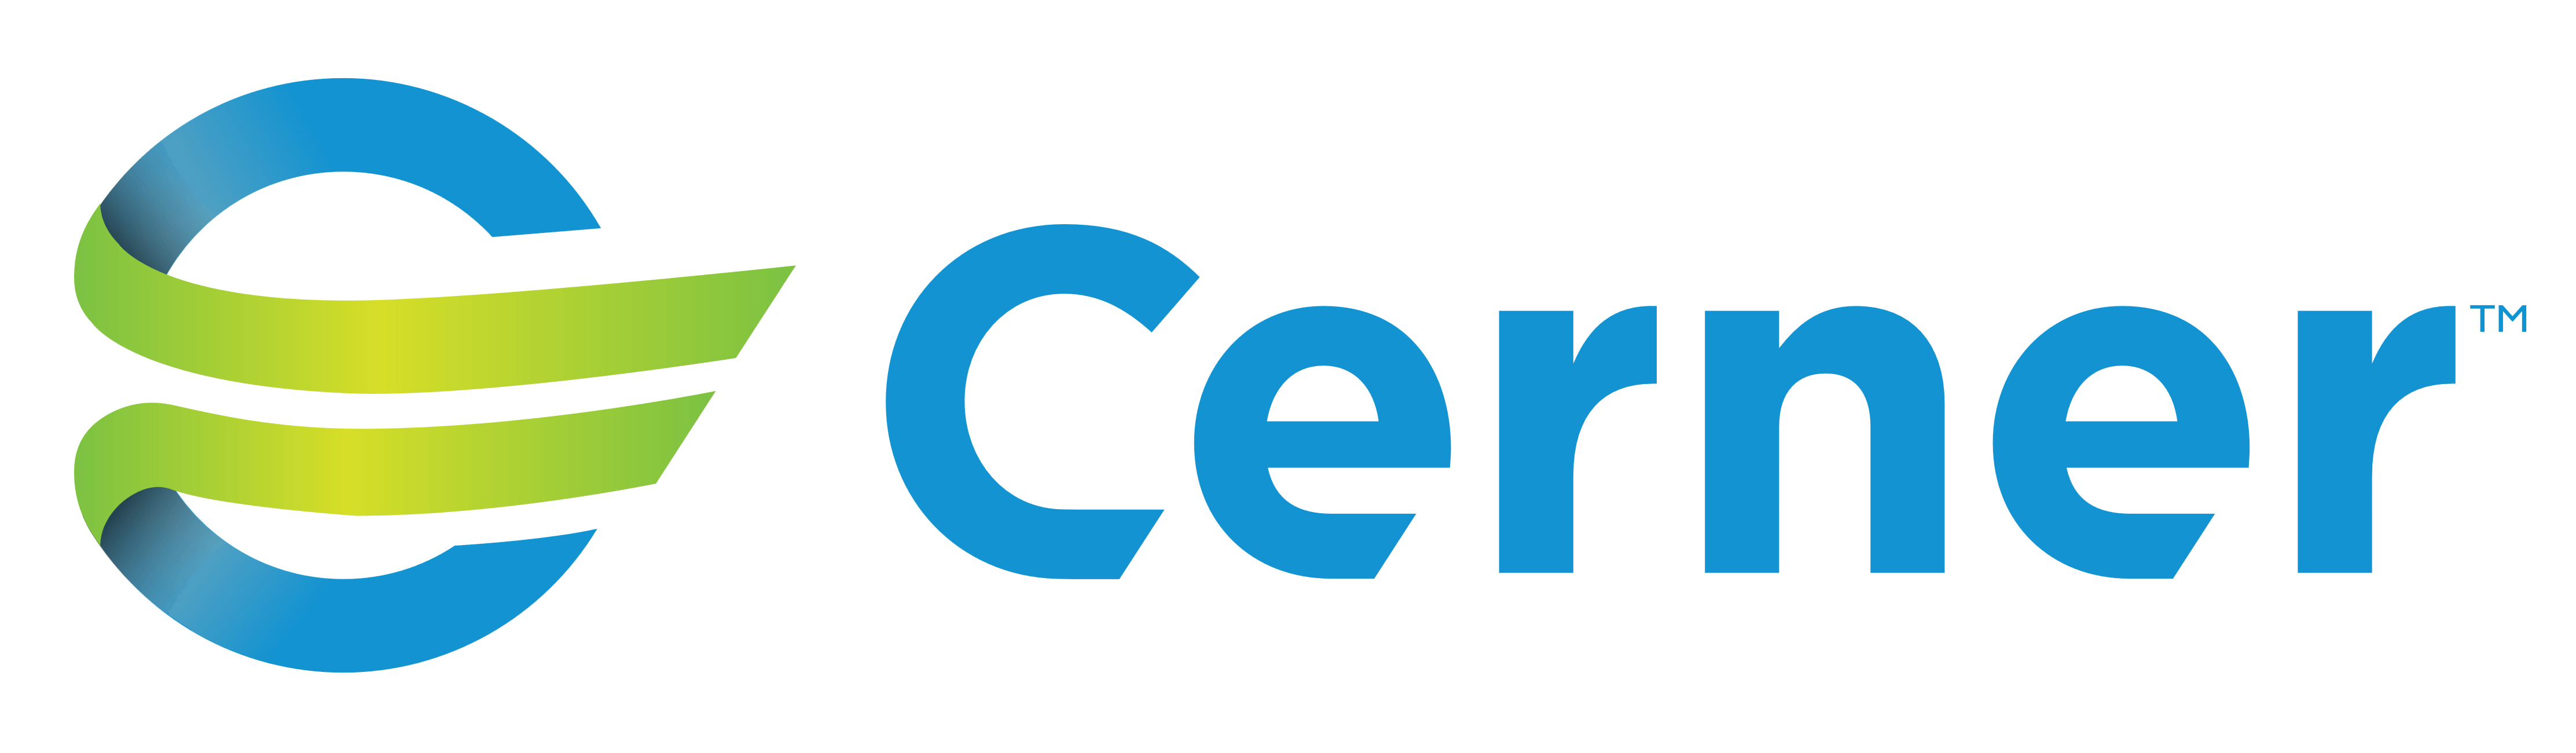 Cerner logo, logotype